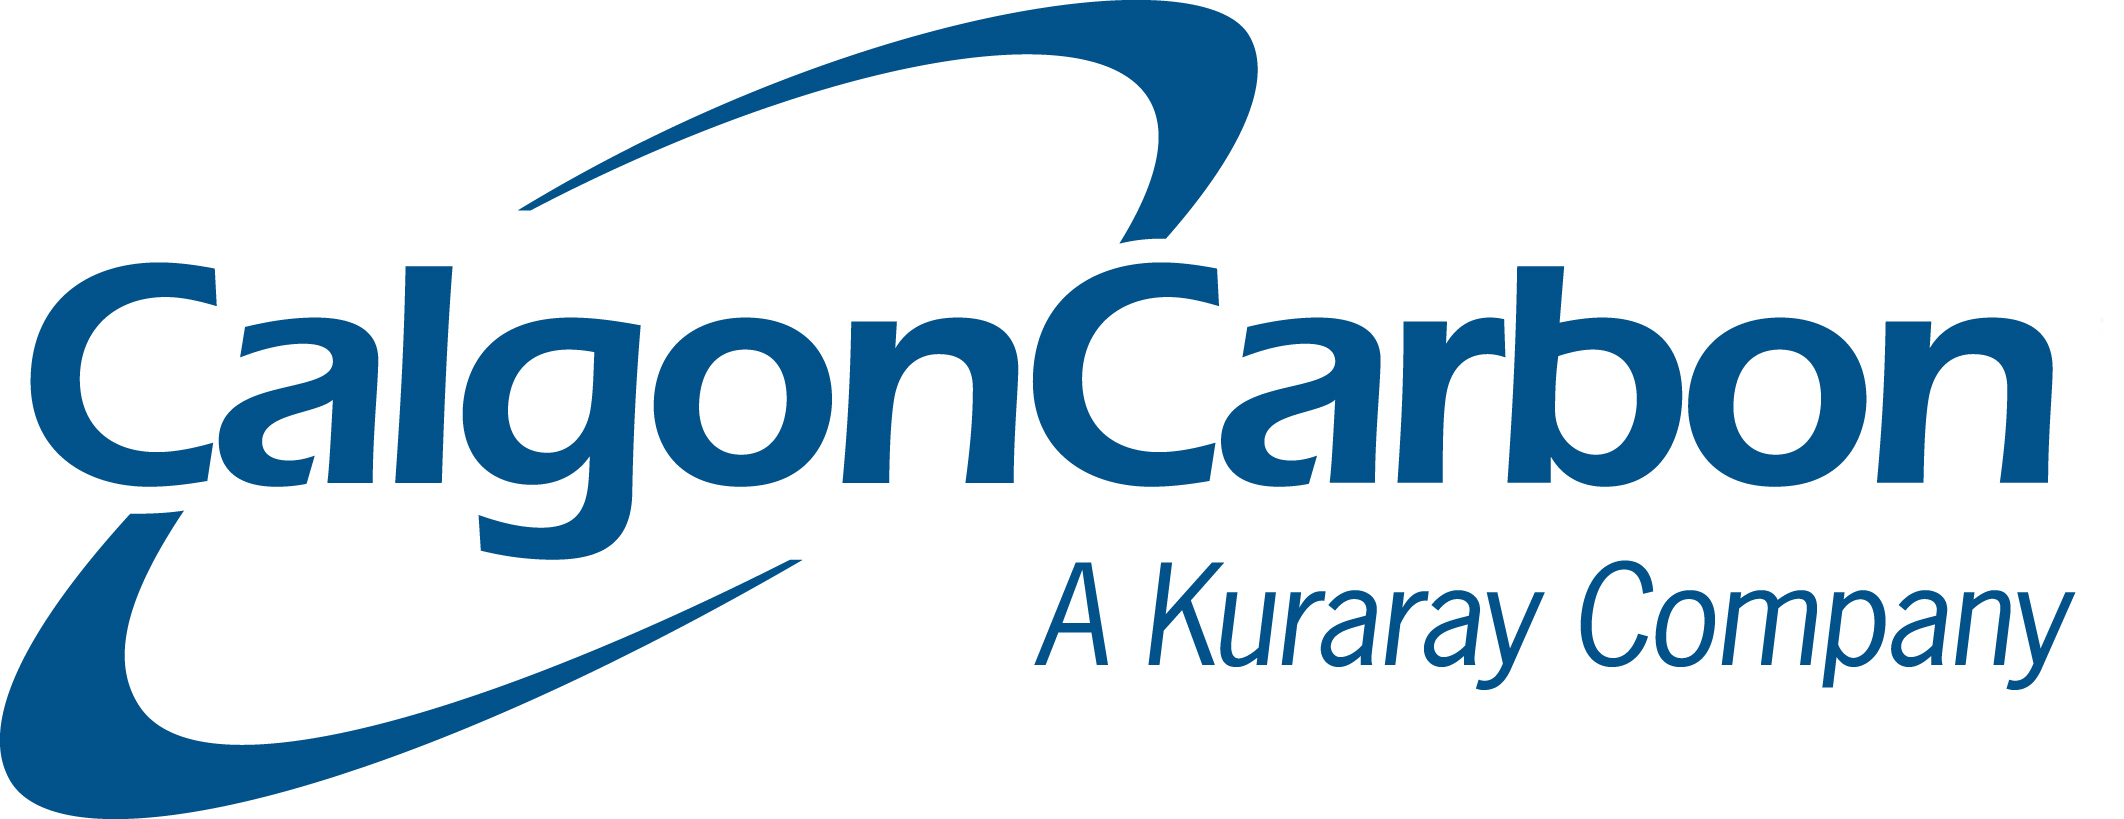 Calgon Carbon Logo